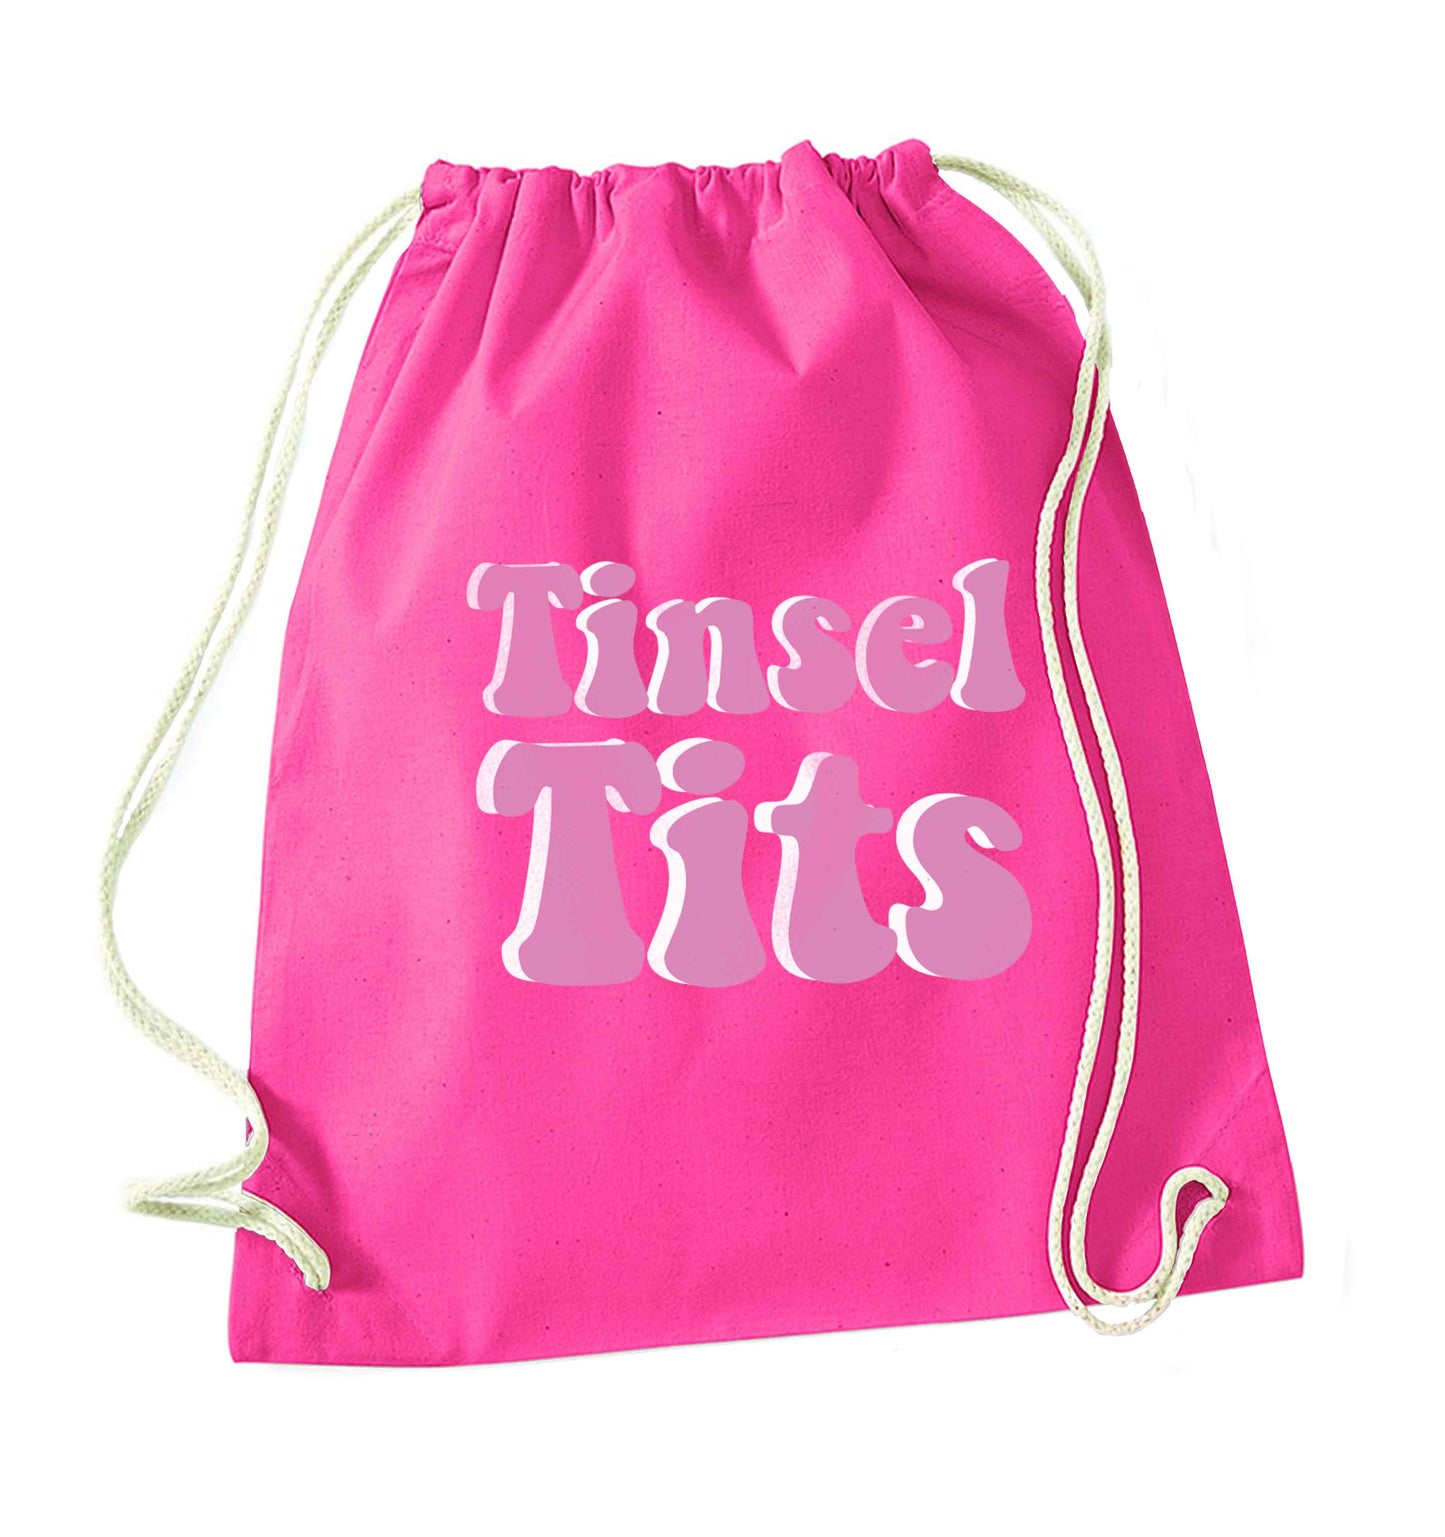 Tinsel tits pink drawstring bag